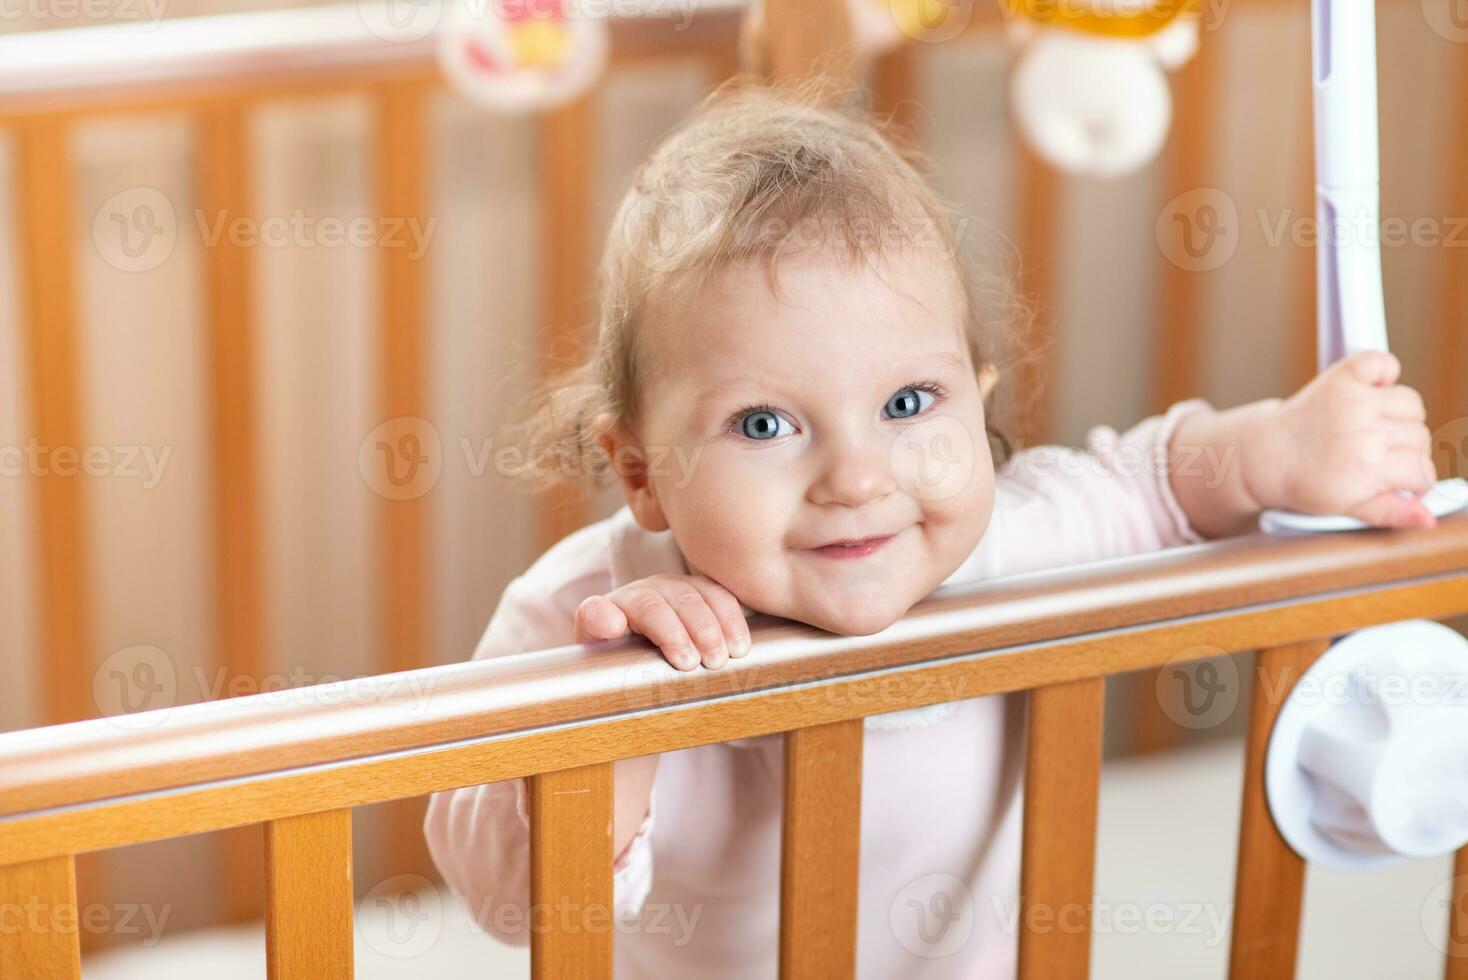 porträtt av en skrattande bebis vem är stående i en spjälsäng foto